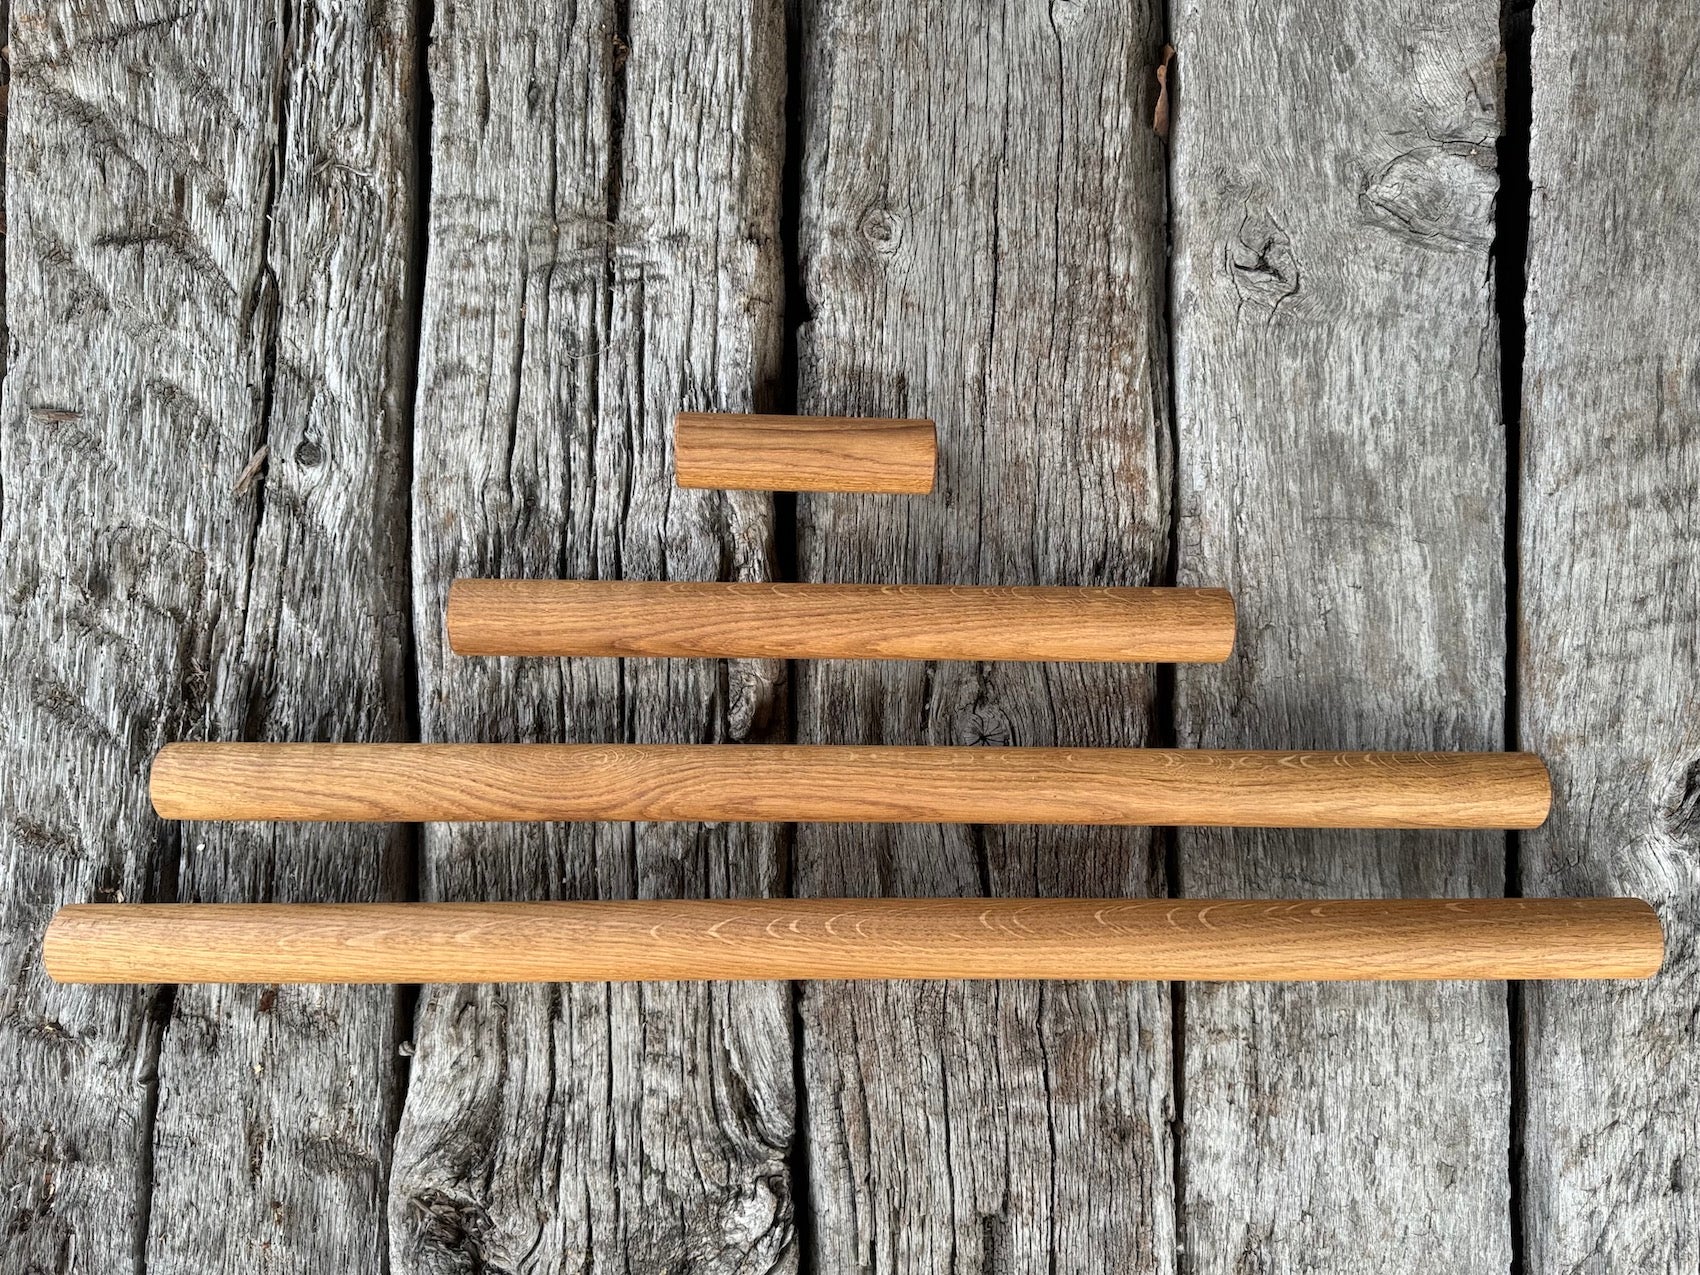 Verschieden lange Teigrollen / Nudelhölzer aus Eichenholz mit einem Durchmesser von 4 cm.